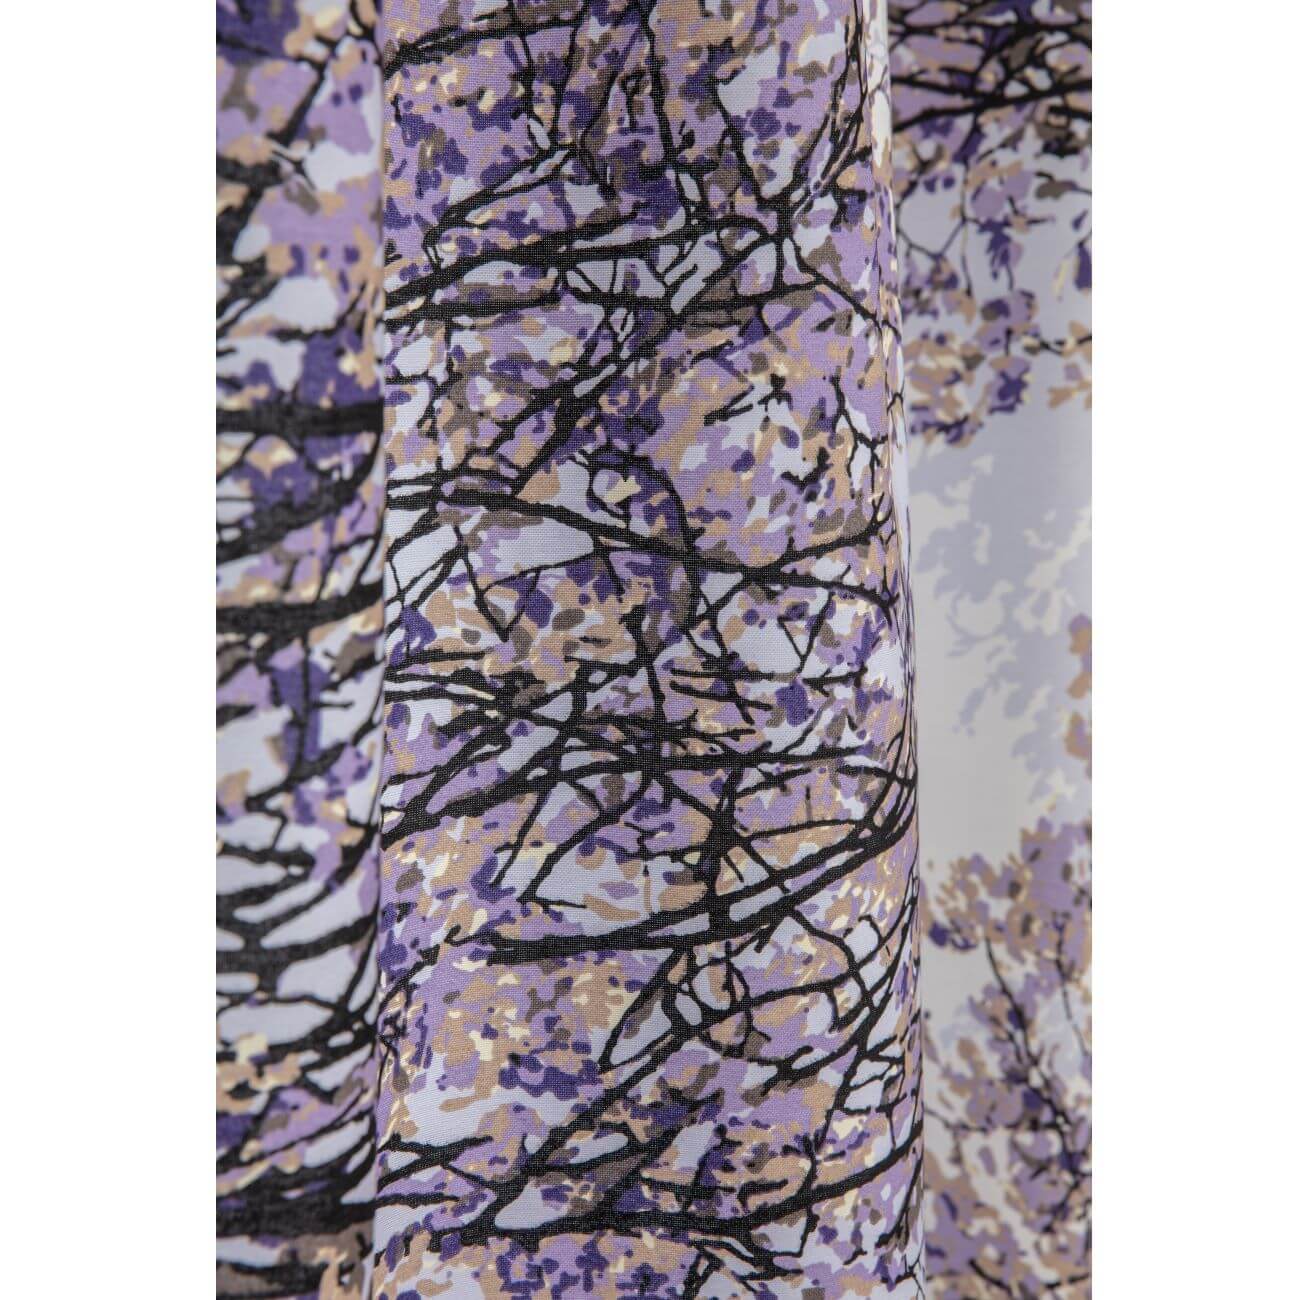 Zasłony bawełniane HAVINA. Fragment zmarszczonego wzoru w drobne gałęzie i liście drzewa w odcieniach koloru fioletowego na białym tle. Skandynawski design